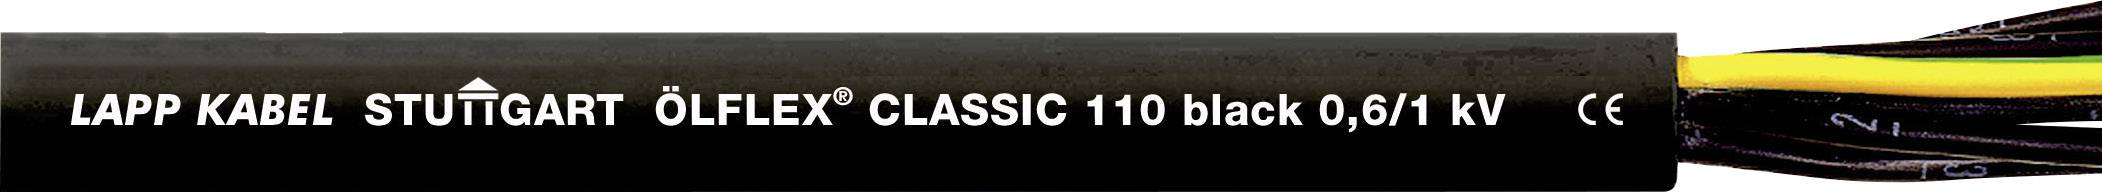 LAPP ÖLFLEX CLASSIC BLACK 110 Steuerleitung 7 G 0.75 mm² Schwarz 1120241-1 Meterware